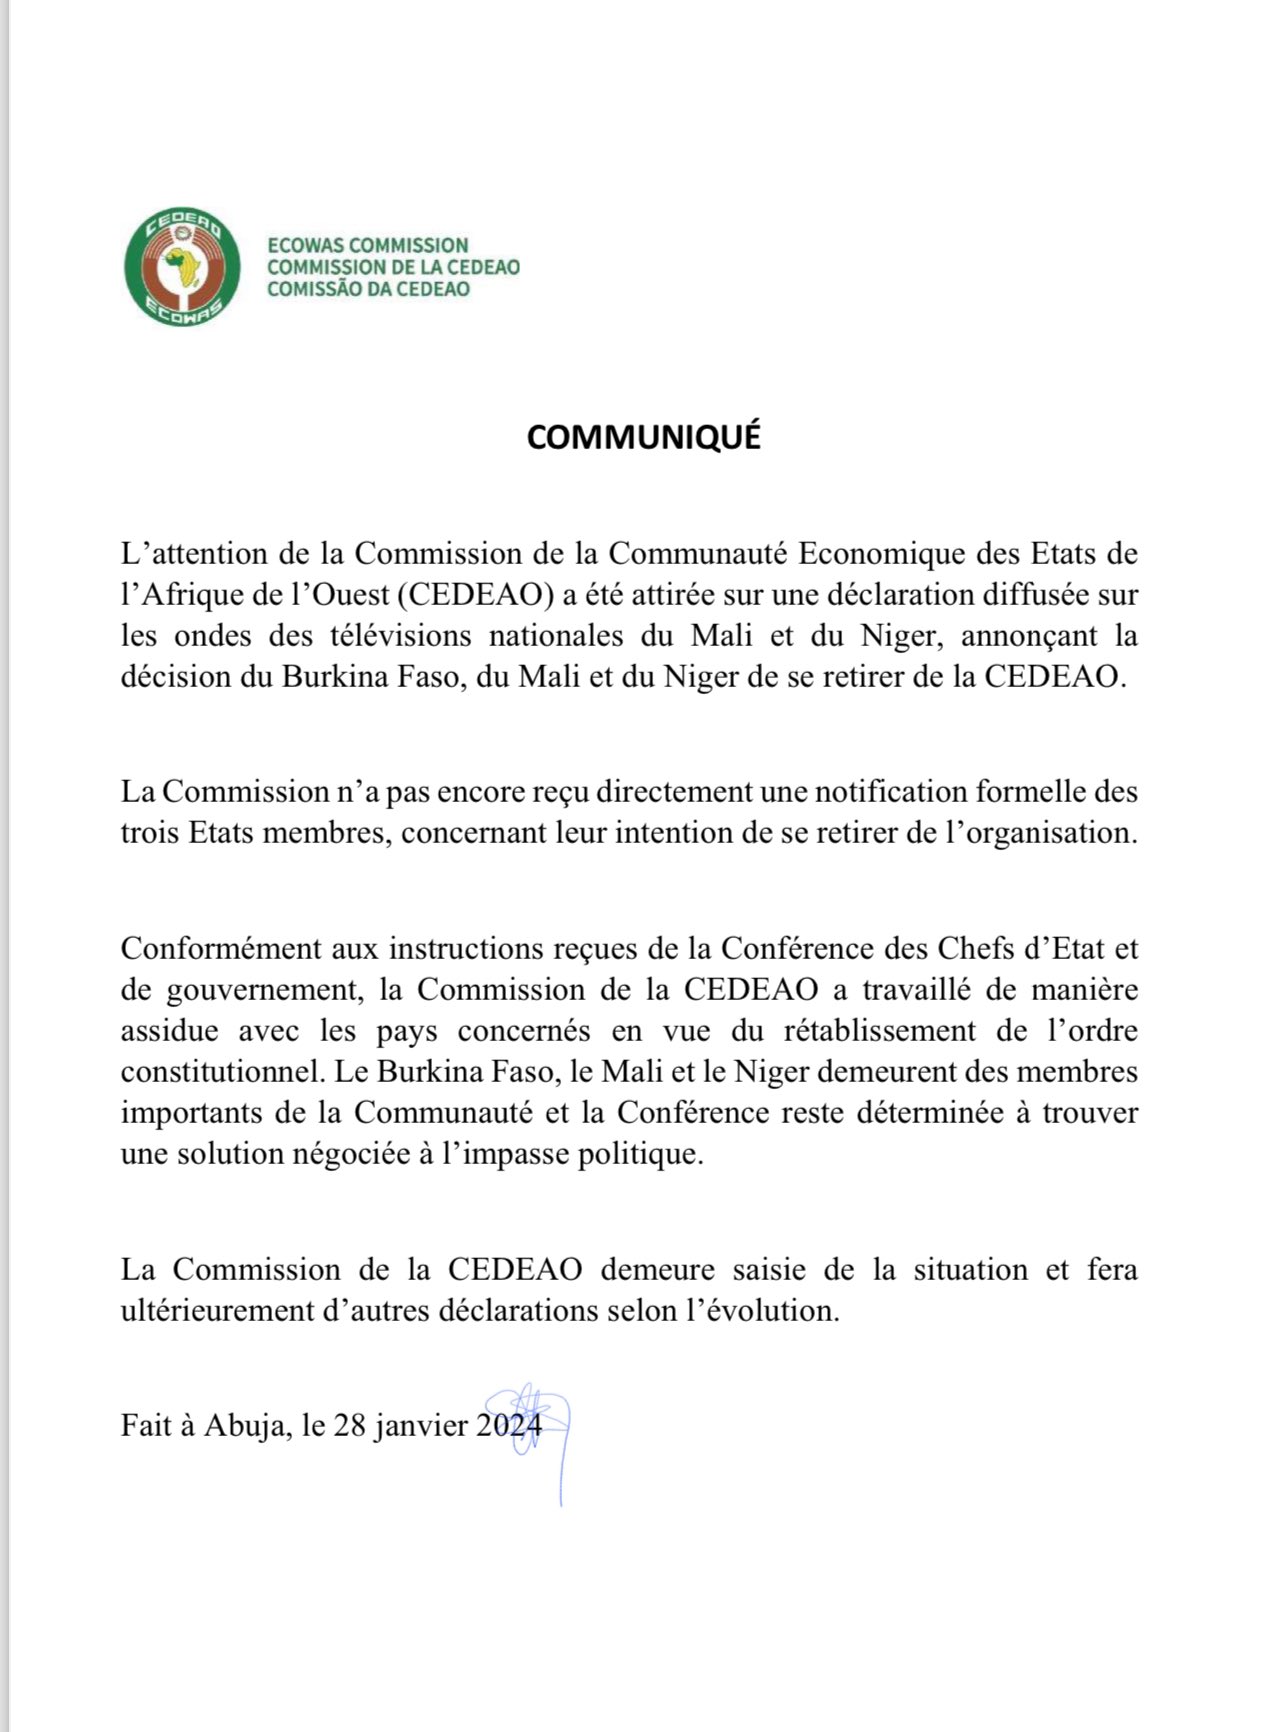 La CEDEAO contredit le retrait du Burkina,du Mali et Niger